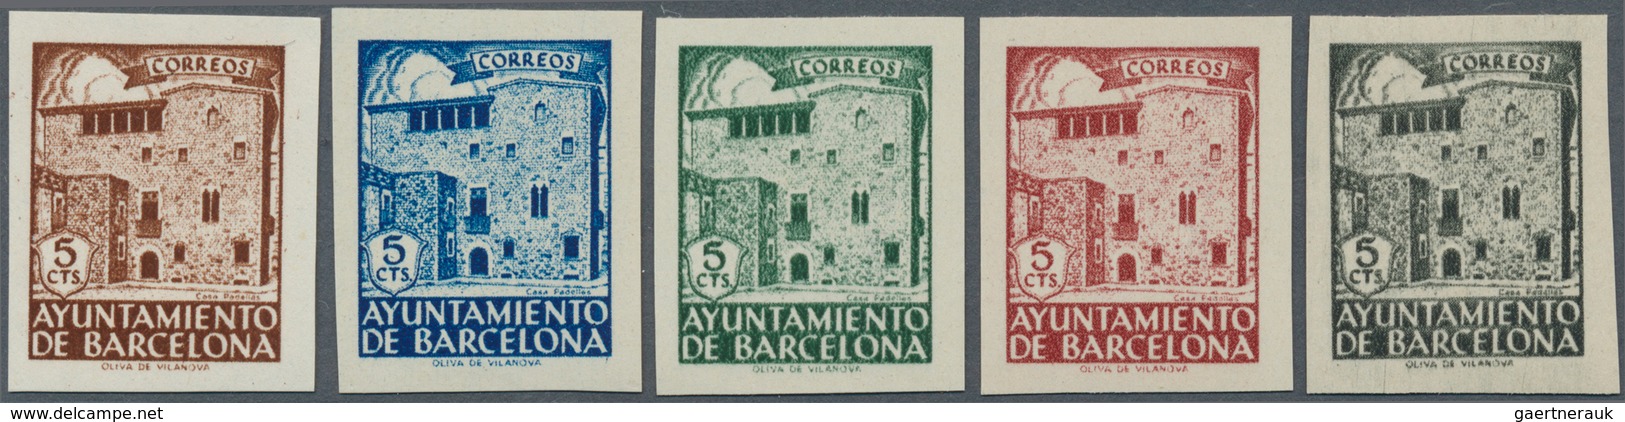 Spanien - Zwangszuschlagsmarken Für Barcelona: 1943, Casa Padellás Set Of Five IMPERFORATE 5c. Stamp - Impuestos De Guerra